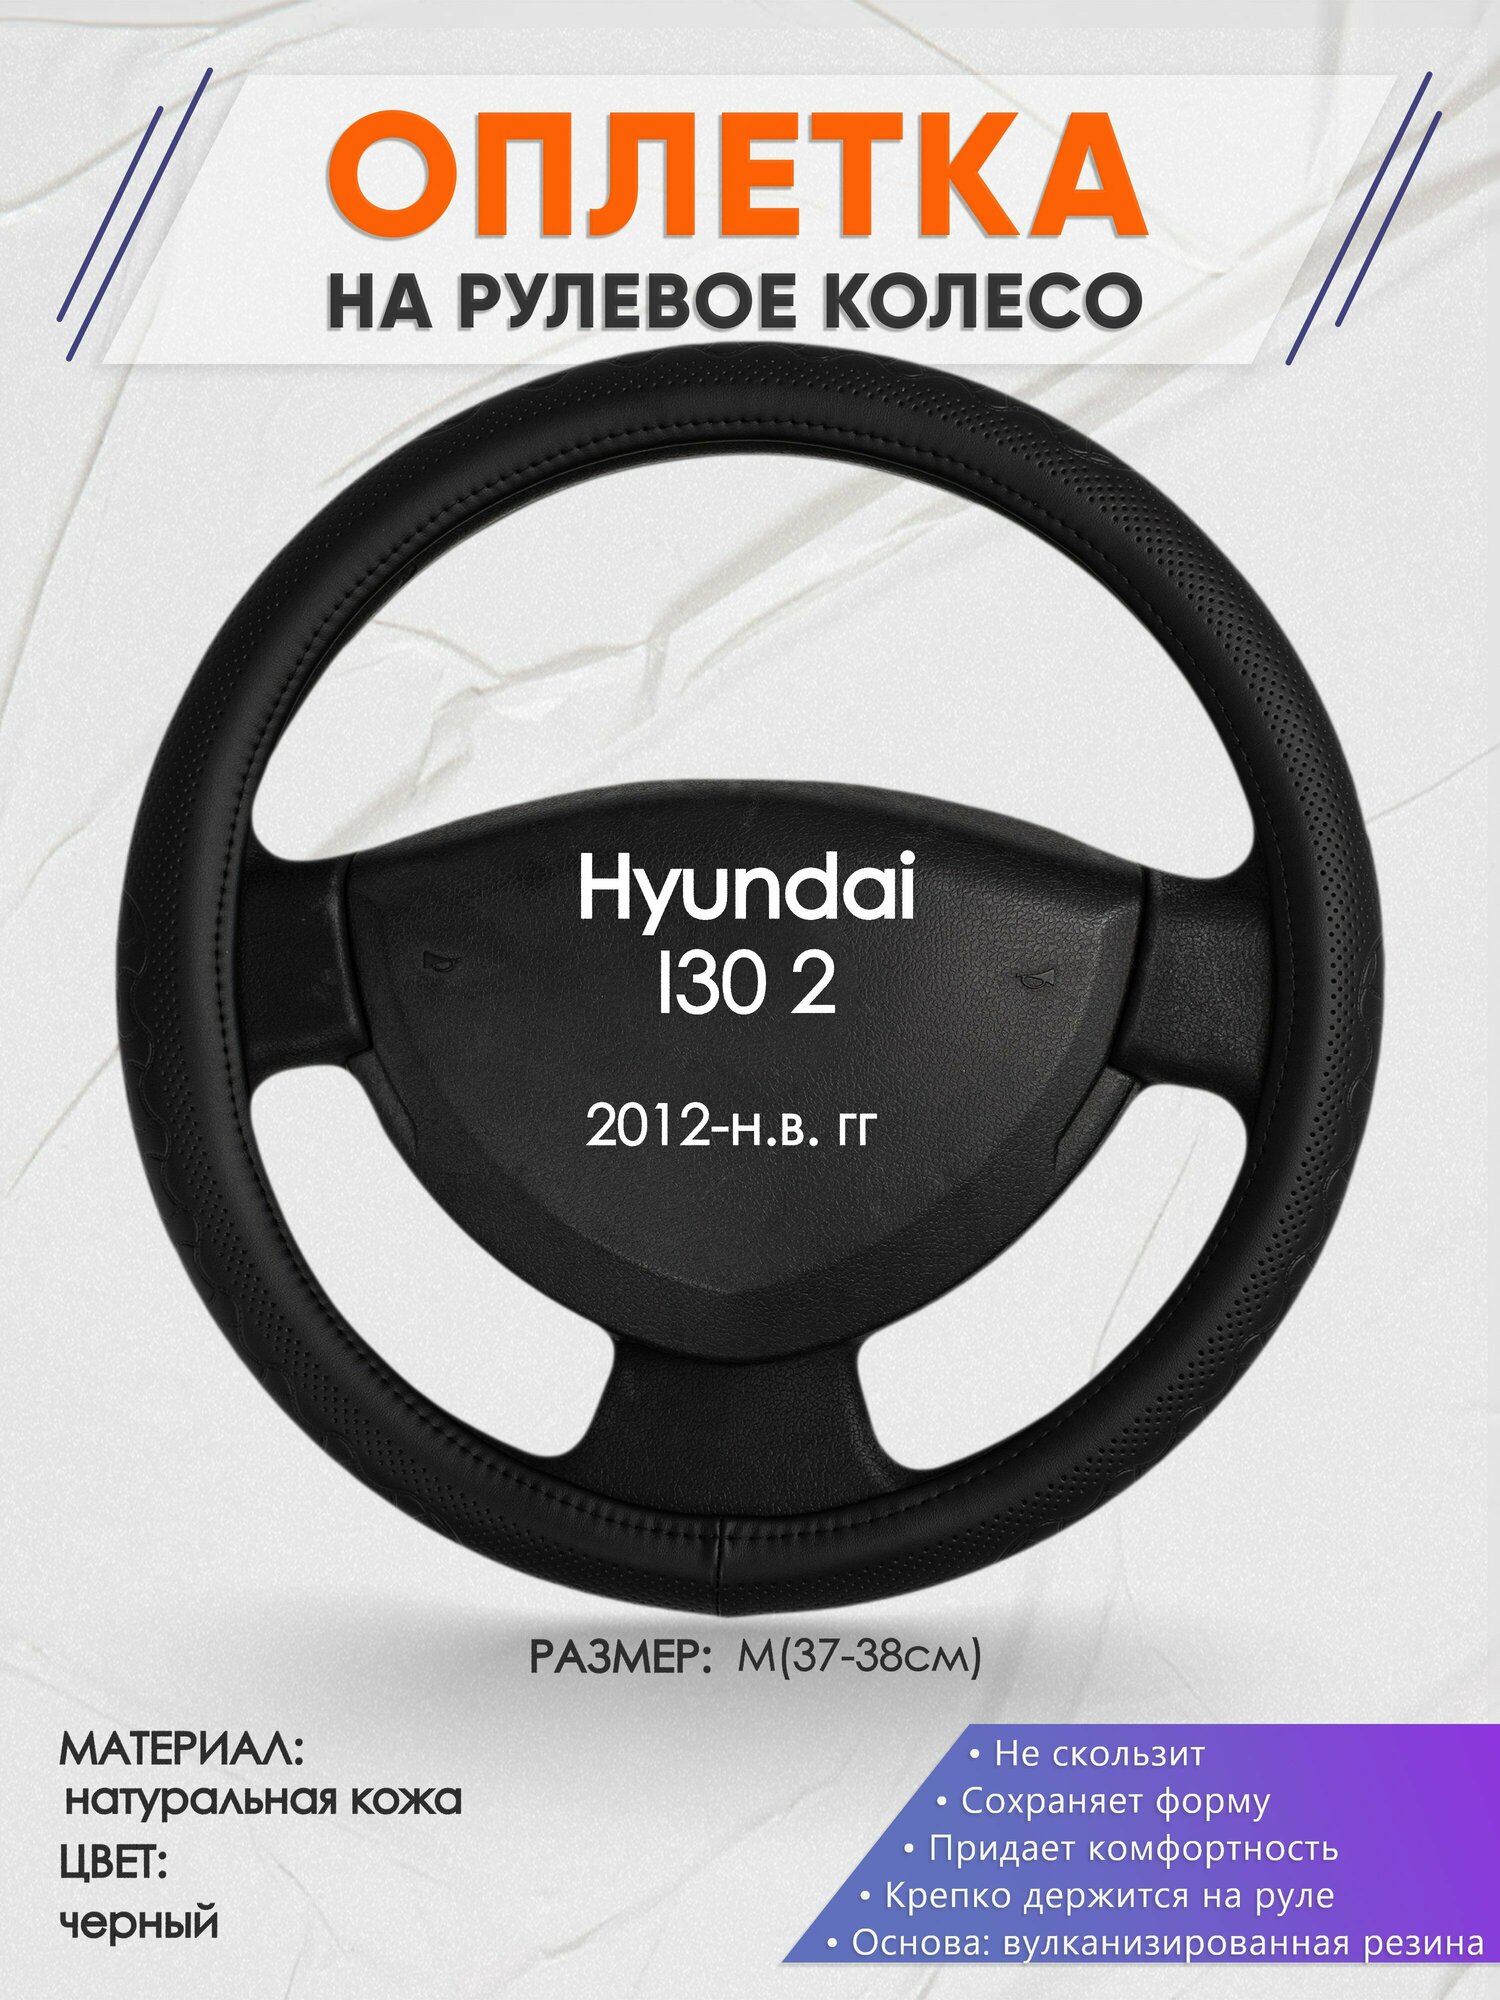 Оплетка на руль для Hyundai I30 2(Хендай И30) 2012-н. в, M(37-38см), Натуральная кожа 25